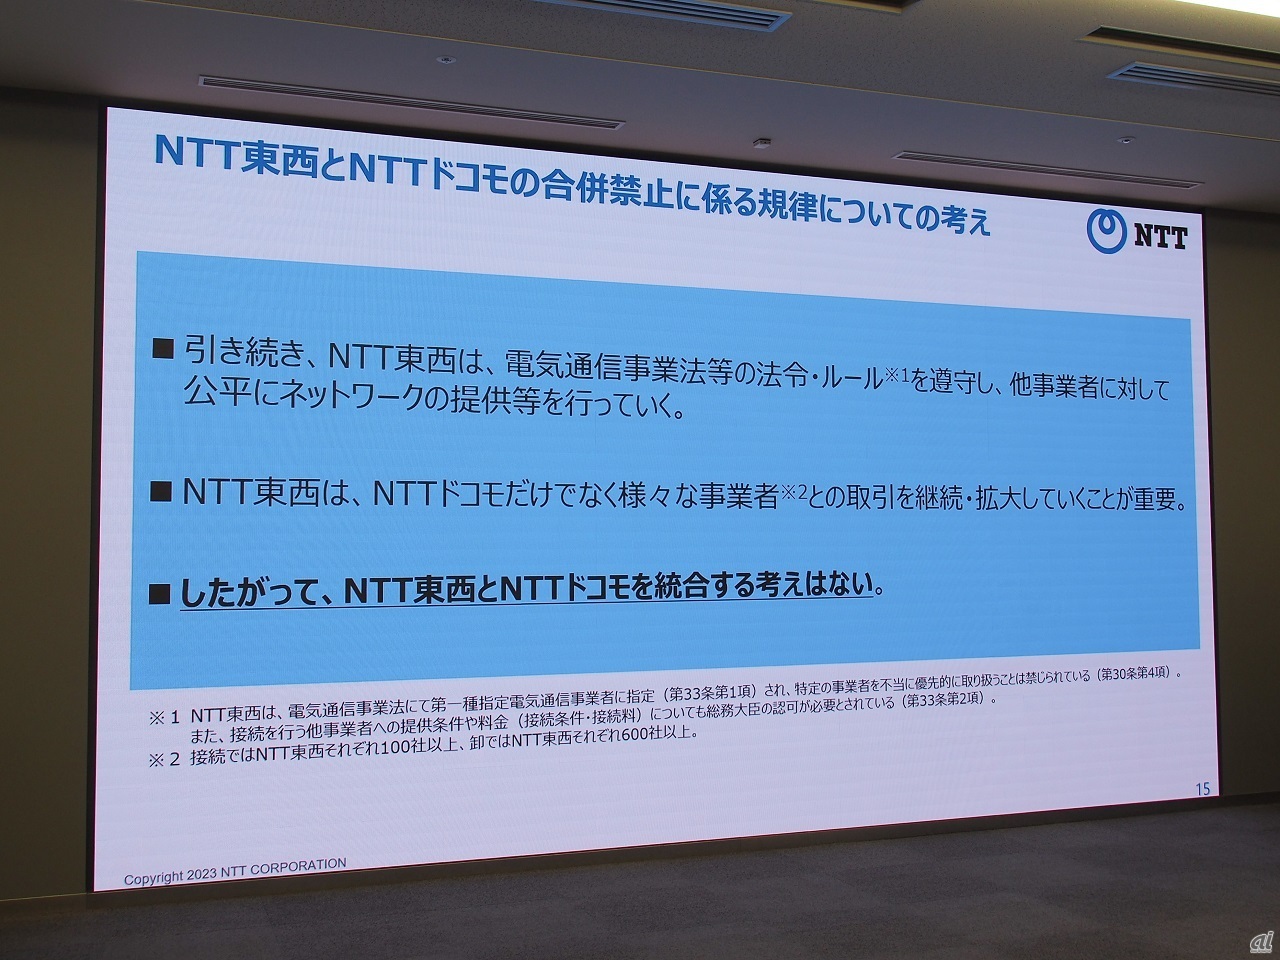 NTT東西とNTTドコモの東西の経営統合は考えていないことを改めて説明するとともに、島田氏は具体的な電気通信事業法の盛り込み方に踏み込んだ言及もしている